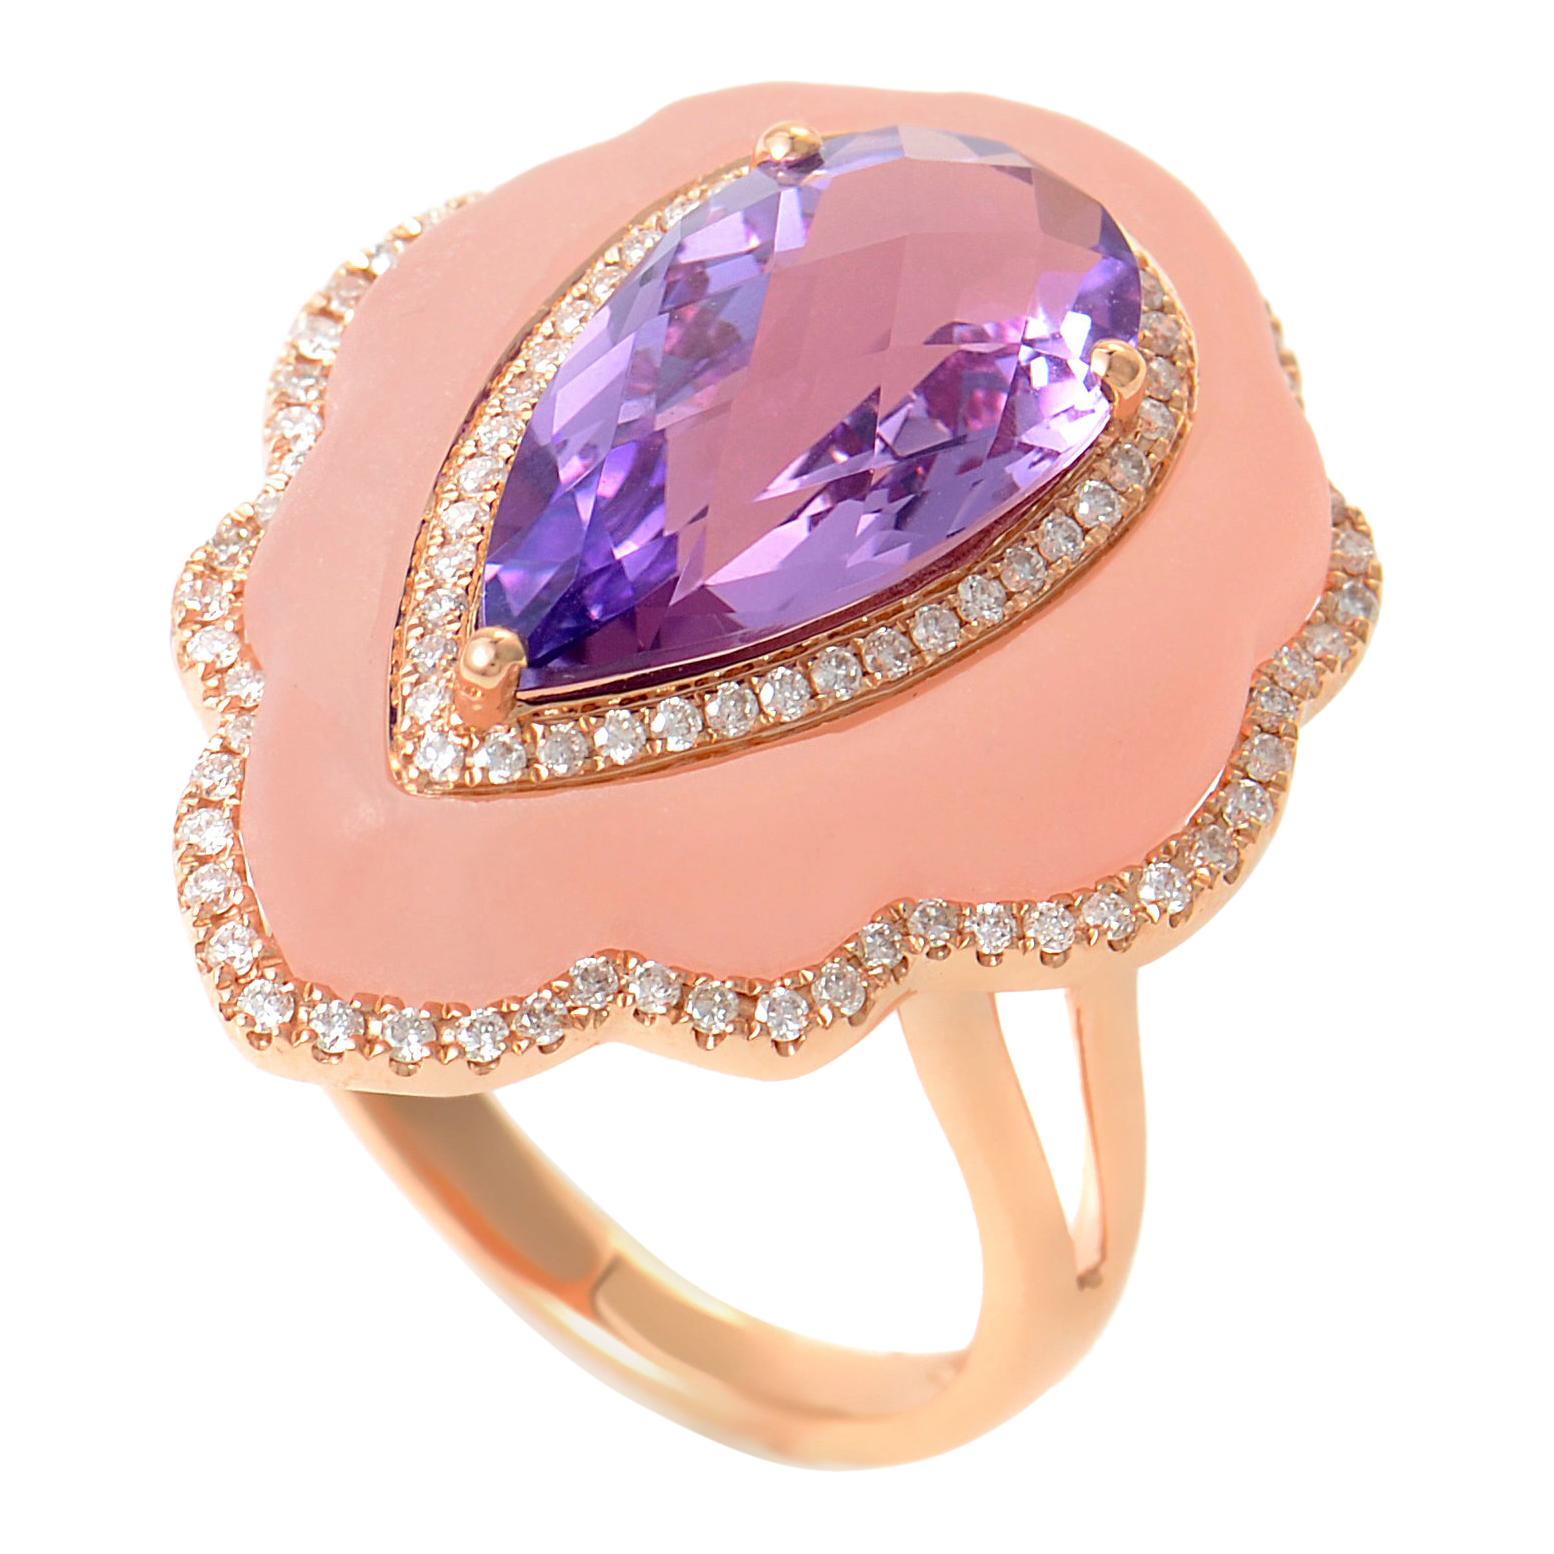 18 Karat Rose Gold White Diamond, Amethyst, and Pink Quartz Ring